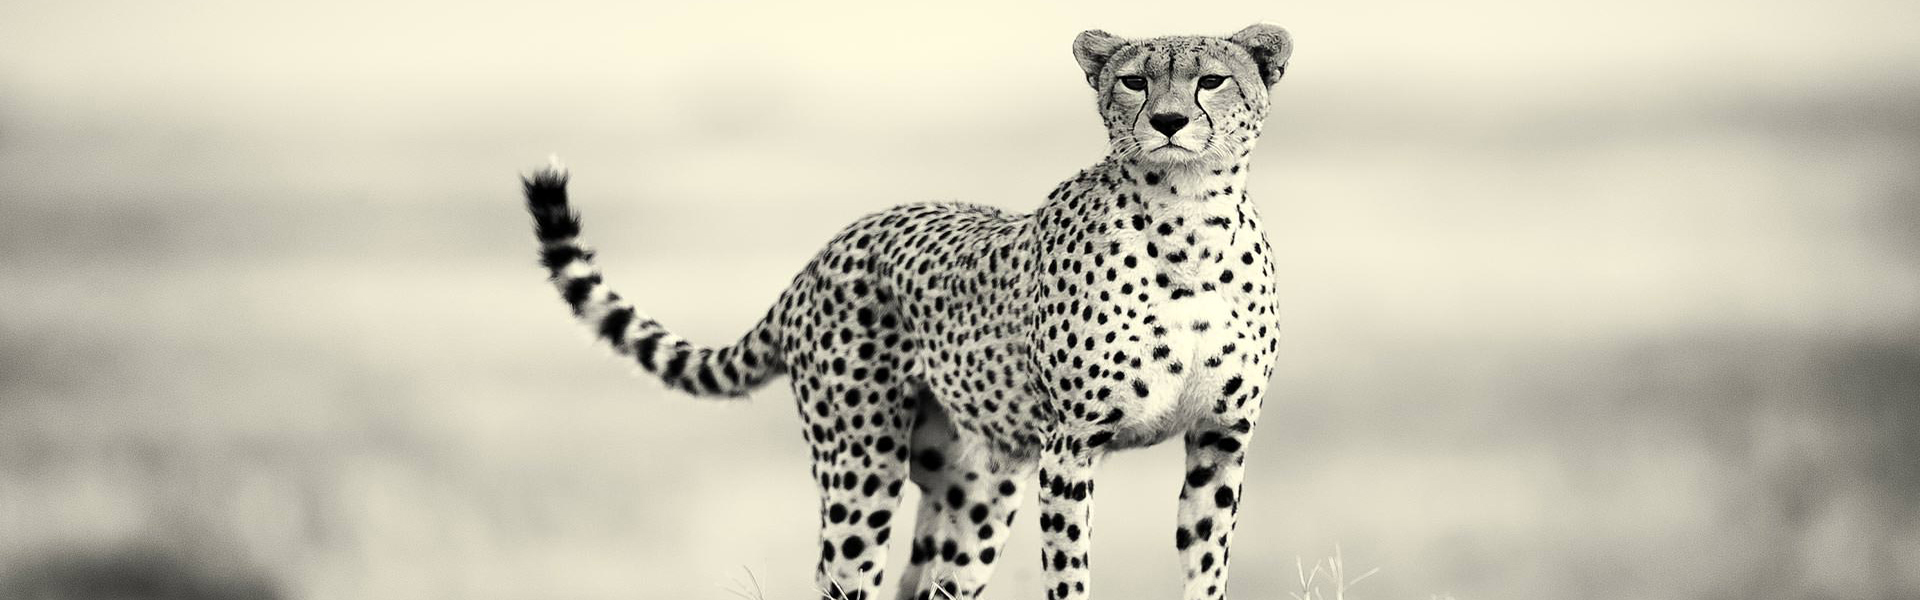 cheetah Tarangire national park